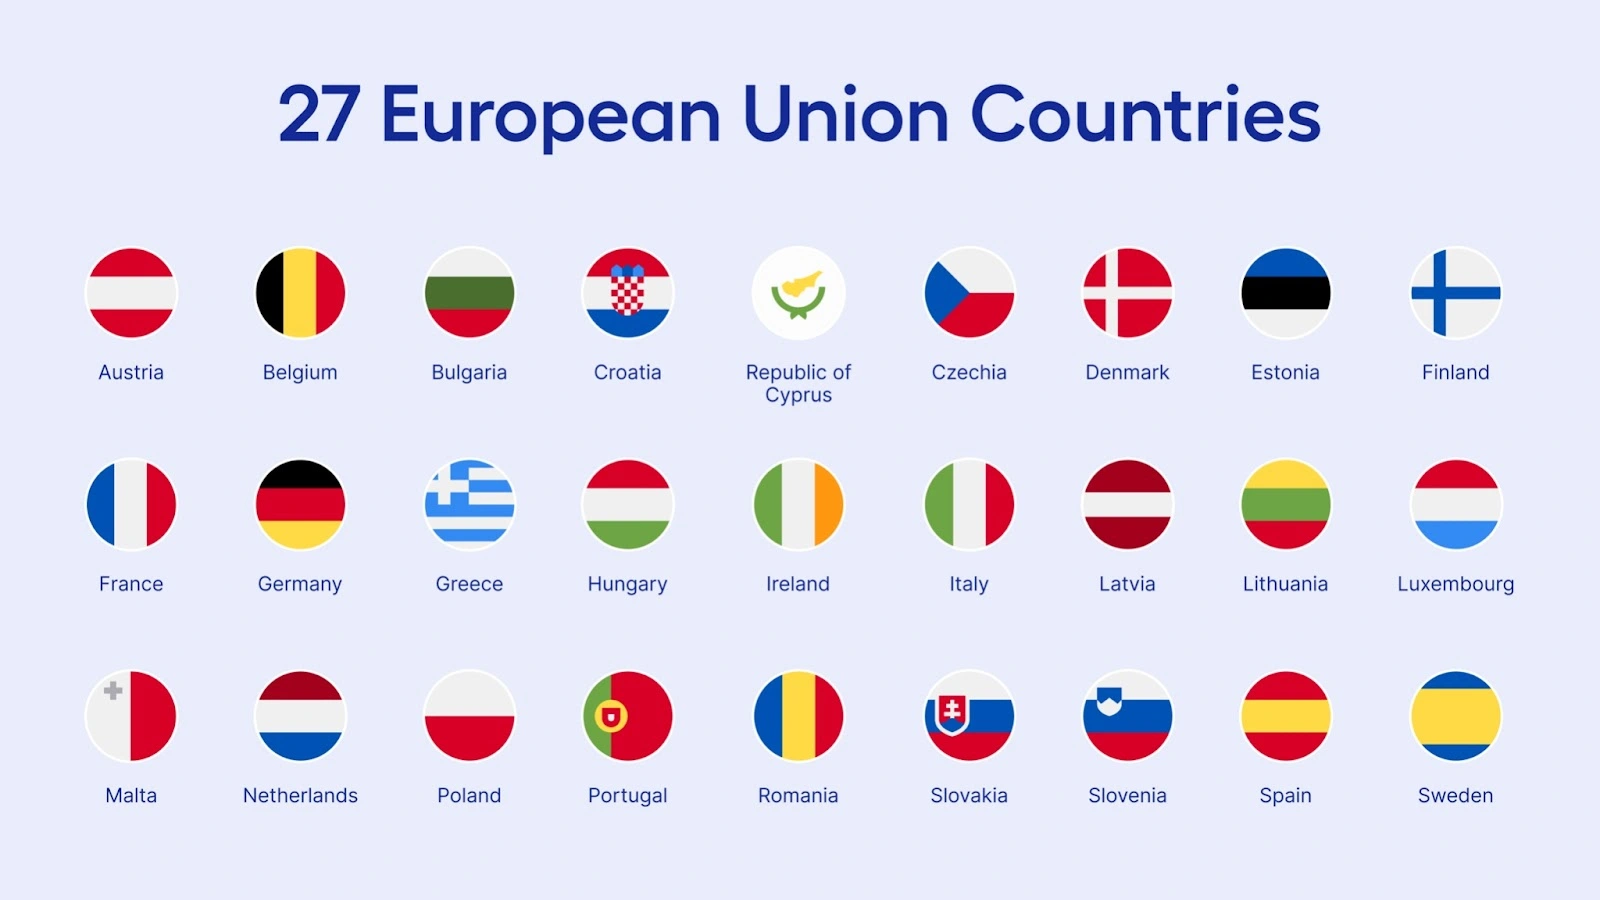 The 27 European Union countries